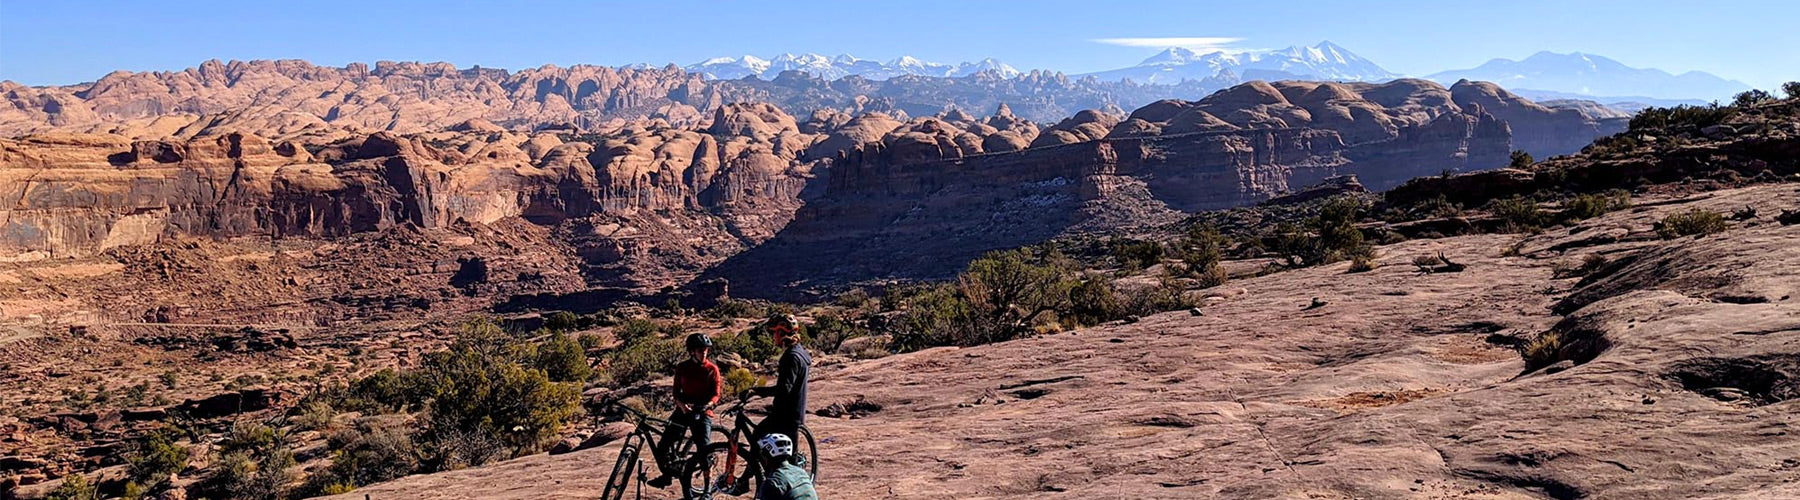 Mountain bikers enjoying a scenic view